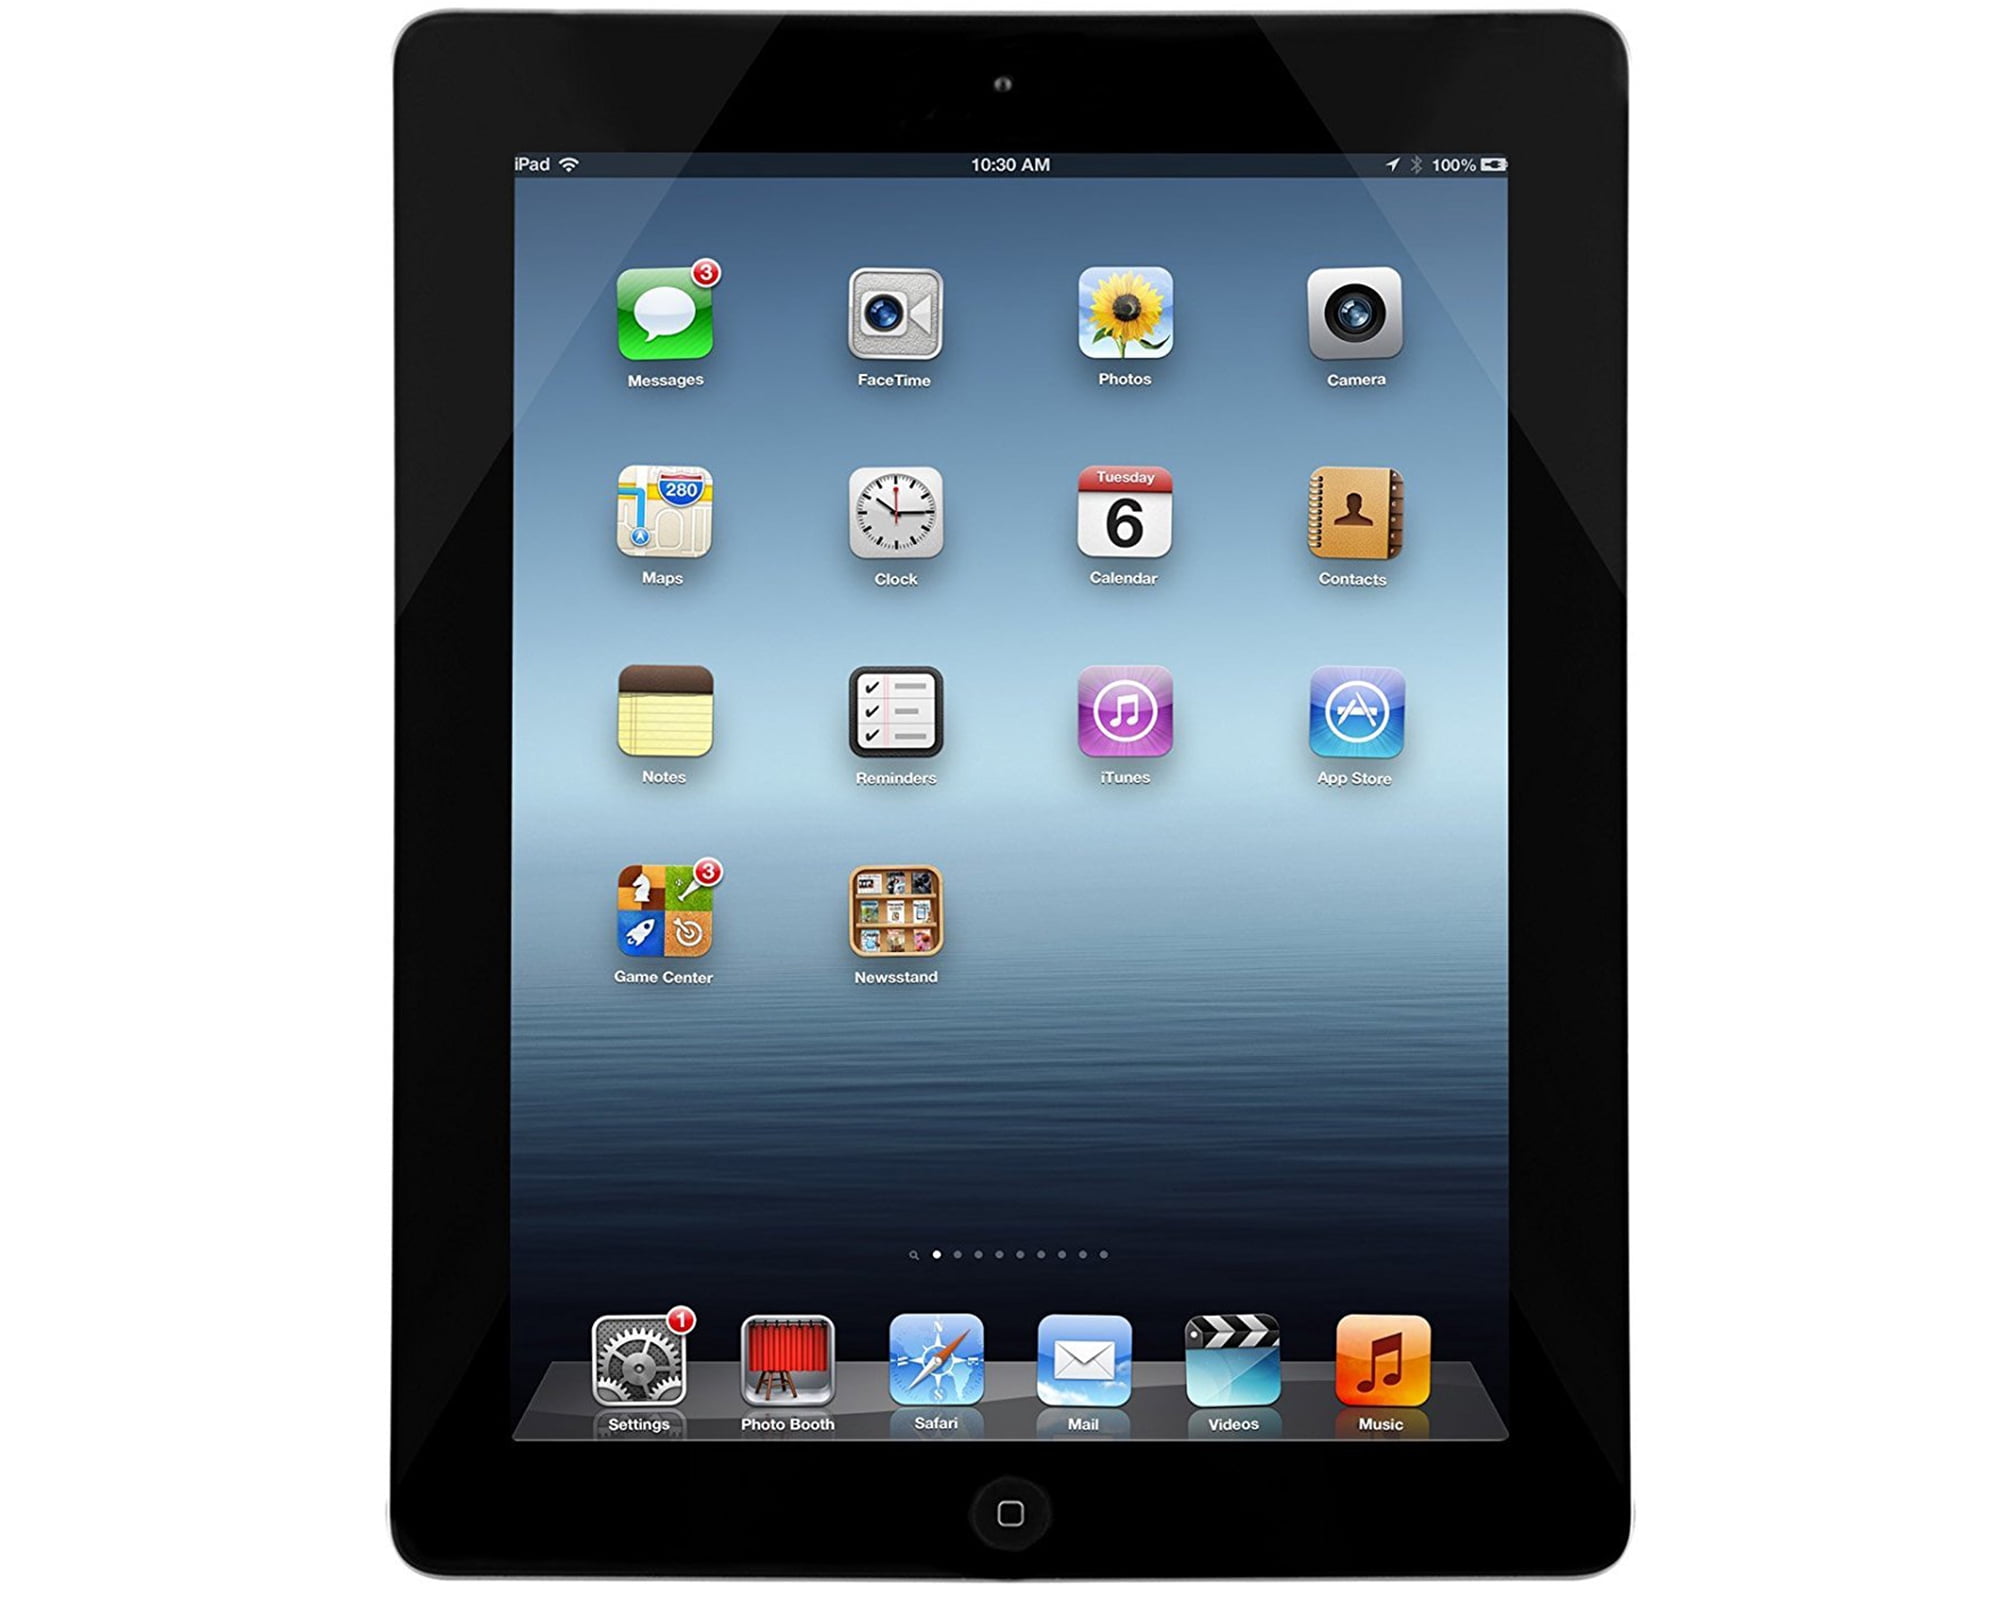 Yenilemek Kız arkadaşı Cumhuriyetçi Parti  Apple iPad 3 Retina Display Wi-Fi 32GB - Black (3rd Generation) -  Refurbished MC706LL/A - Walmart.com